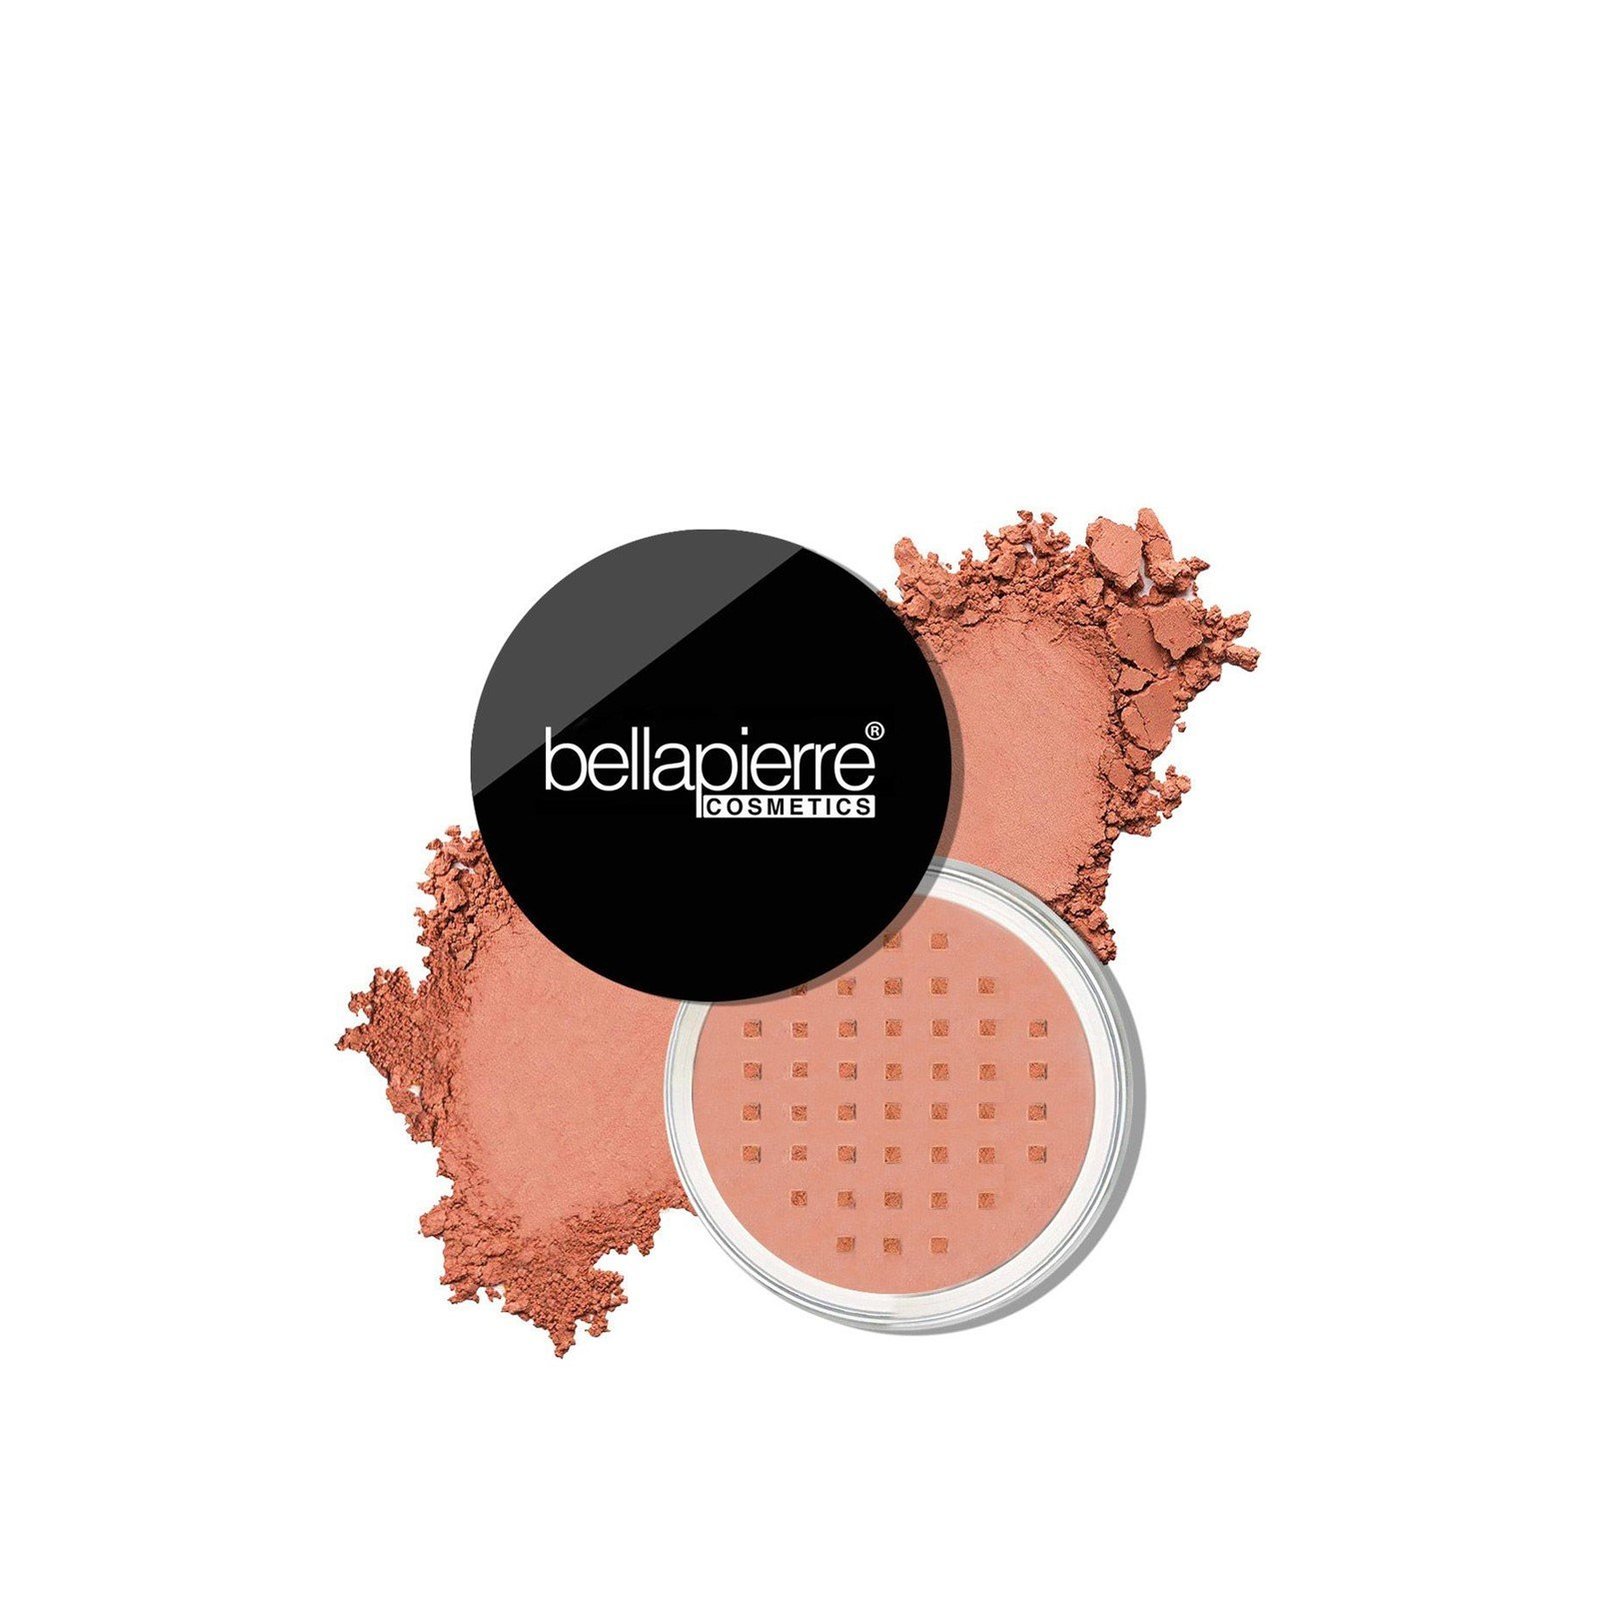 Bellapierre Cosmetics Mineral Blush Amaretto 4g (0.13oz)